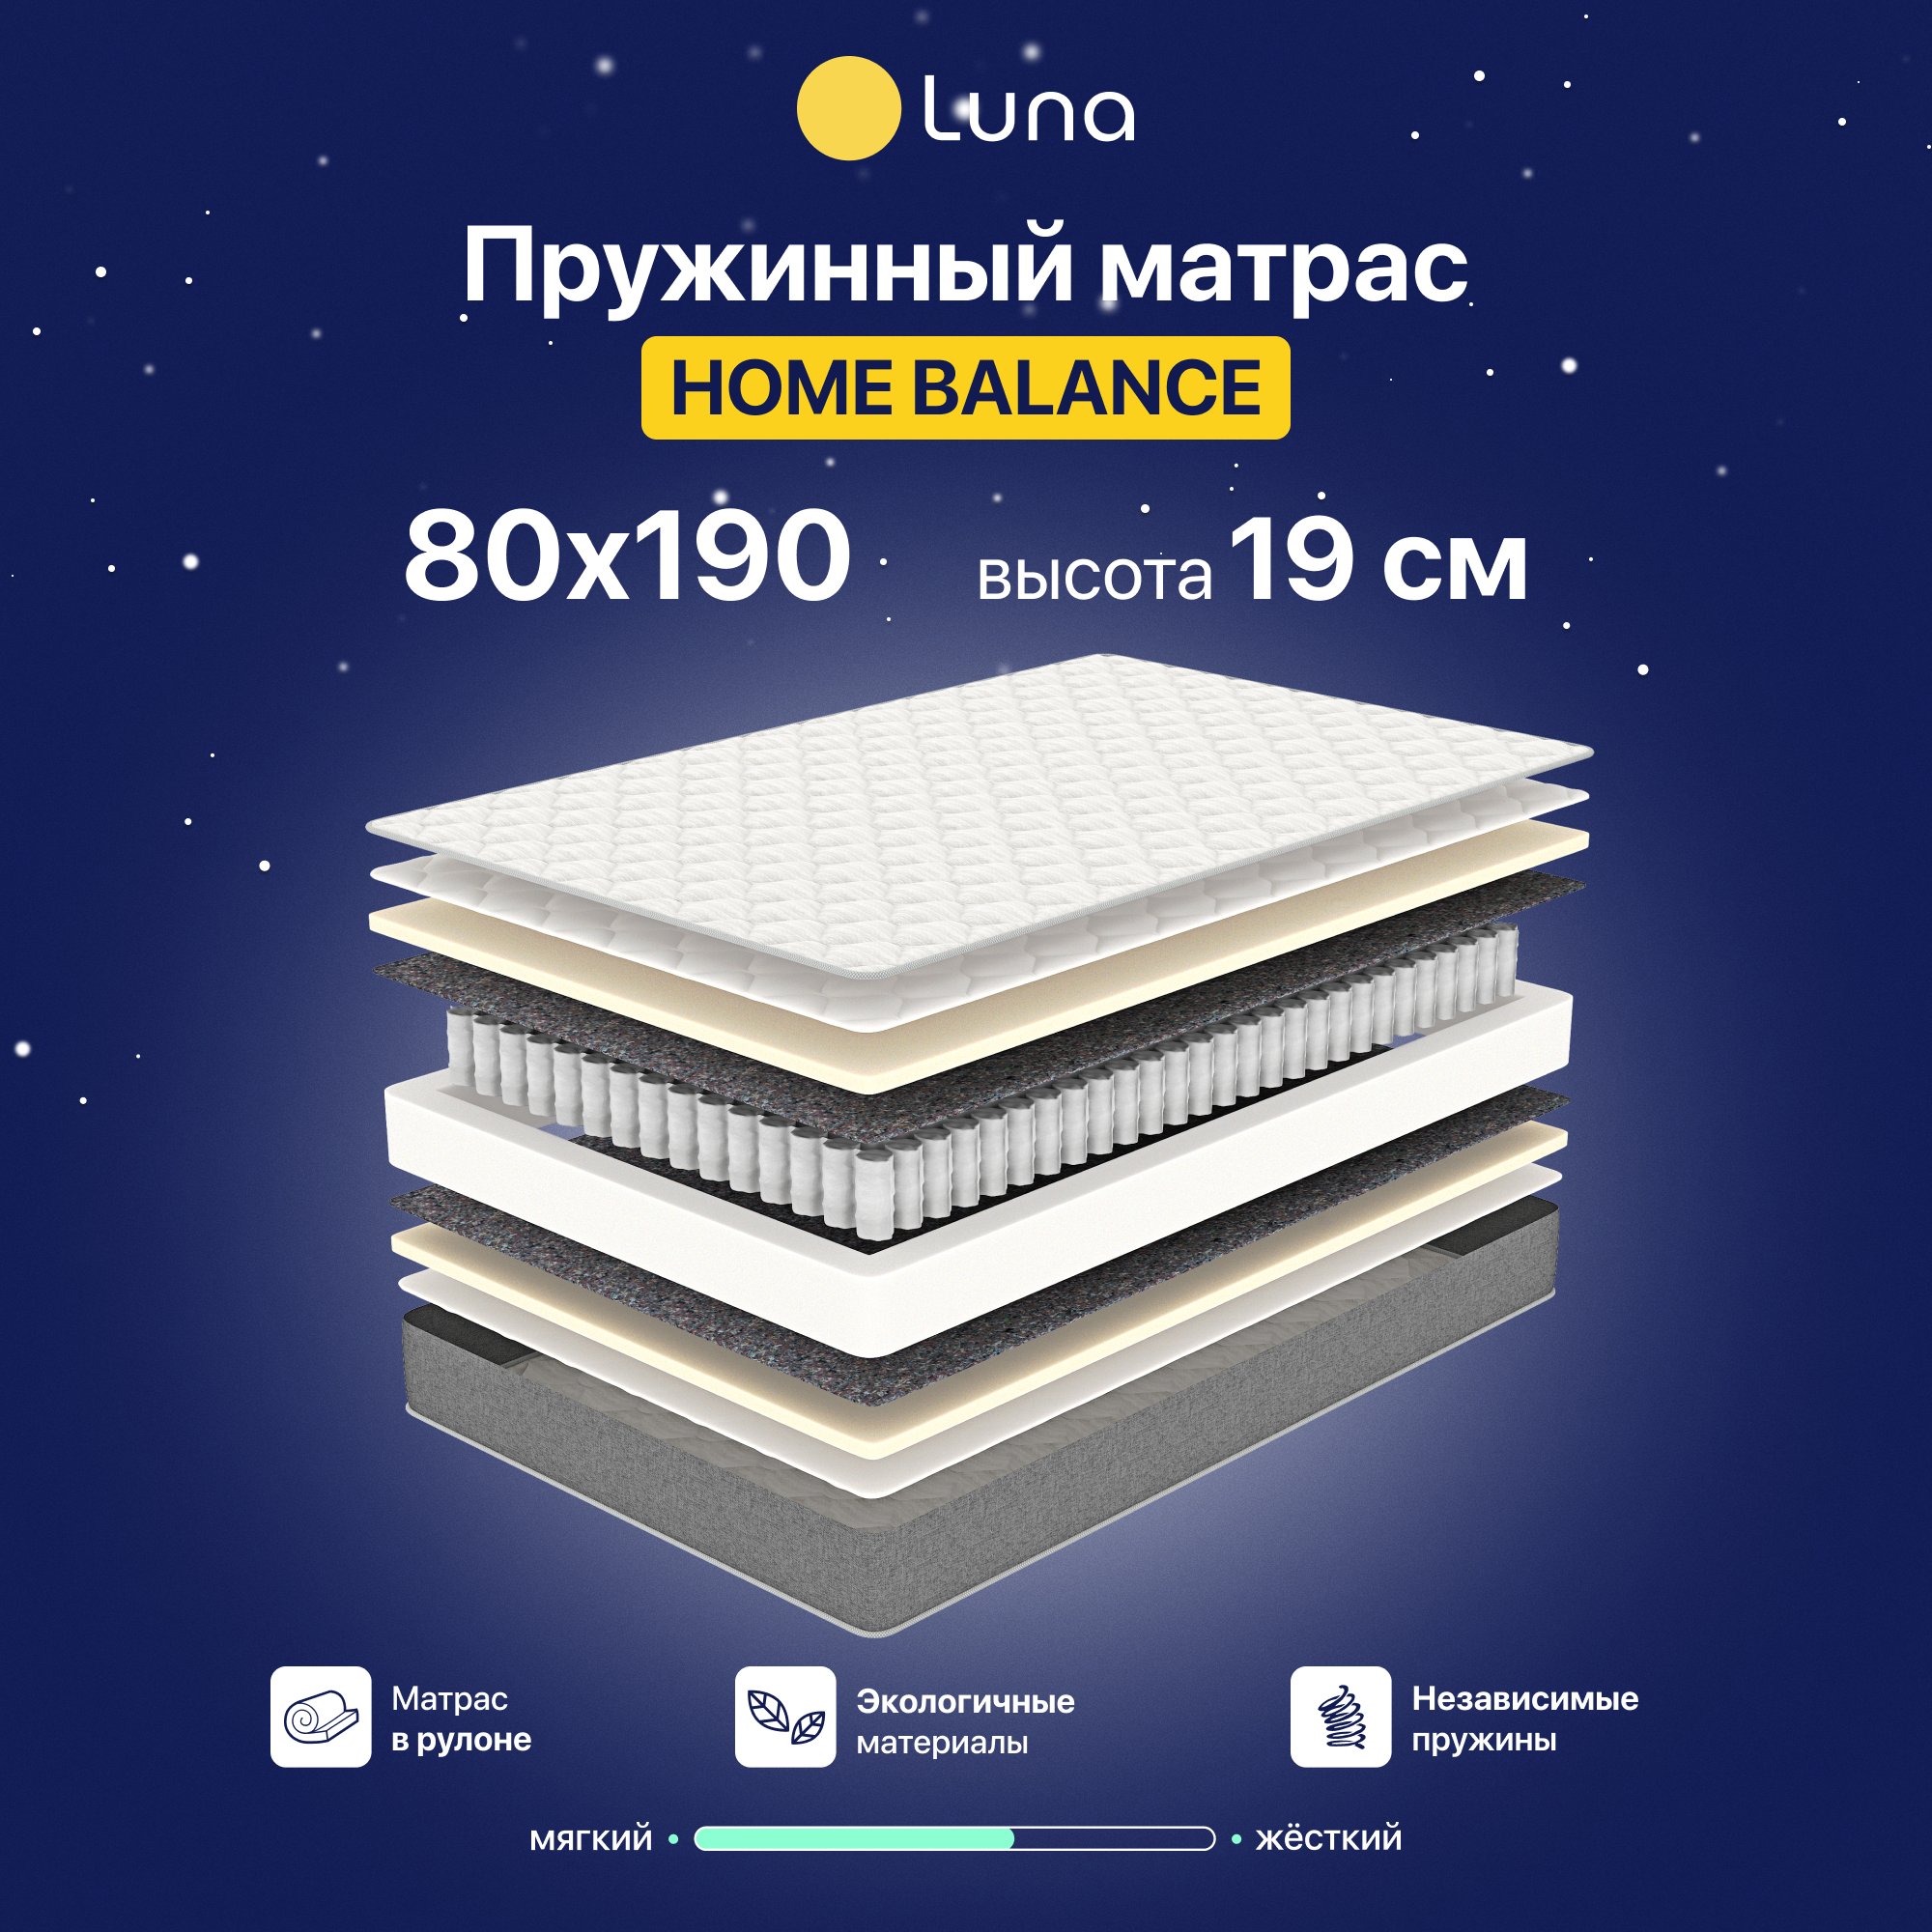 Матрас Luna Inc Home Balance 80х190 см, пружинный, двухсторонний, гипоаллергенный, анатомический, высота 19 см